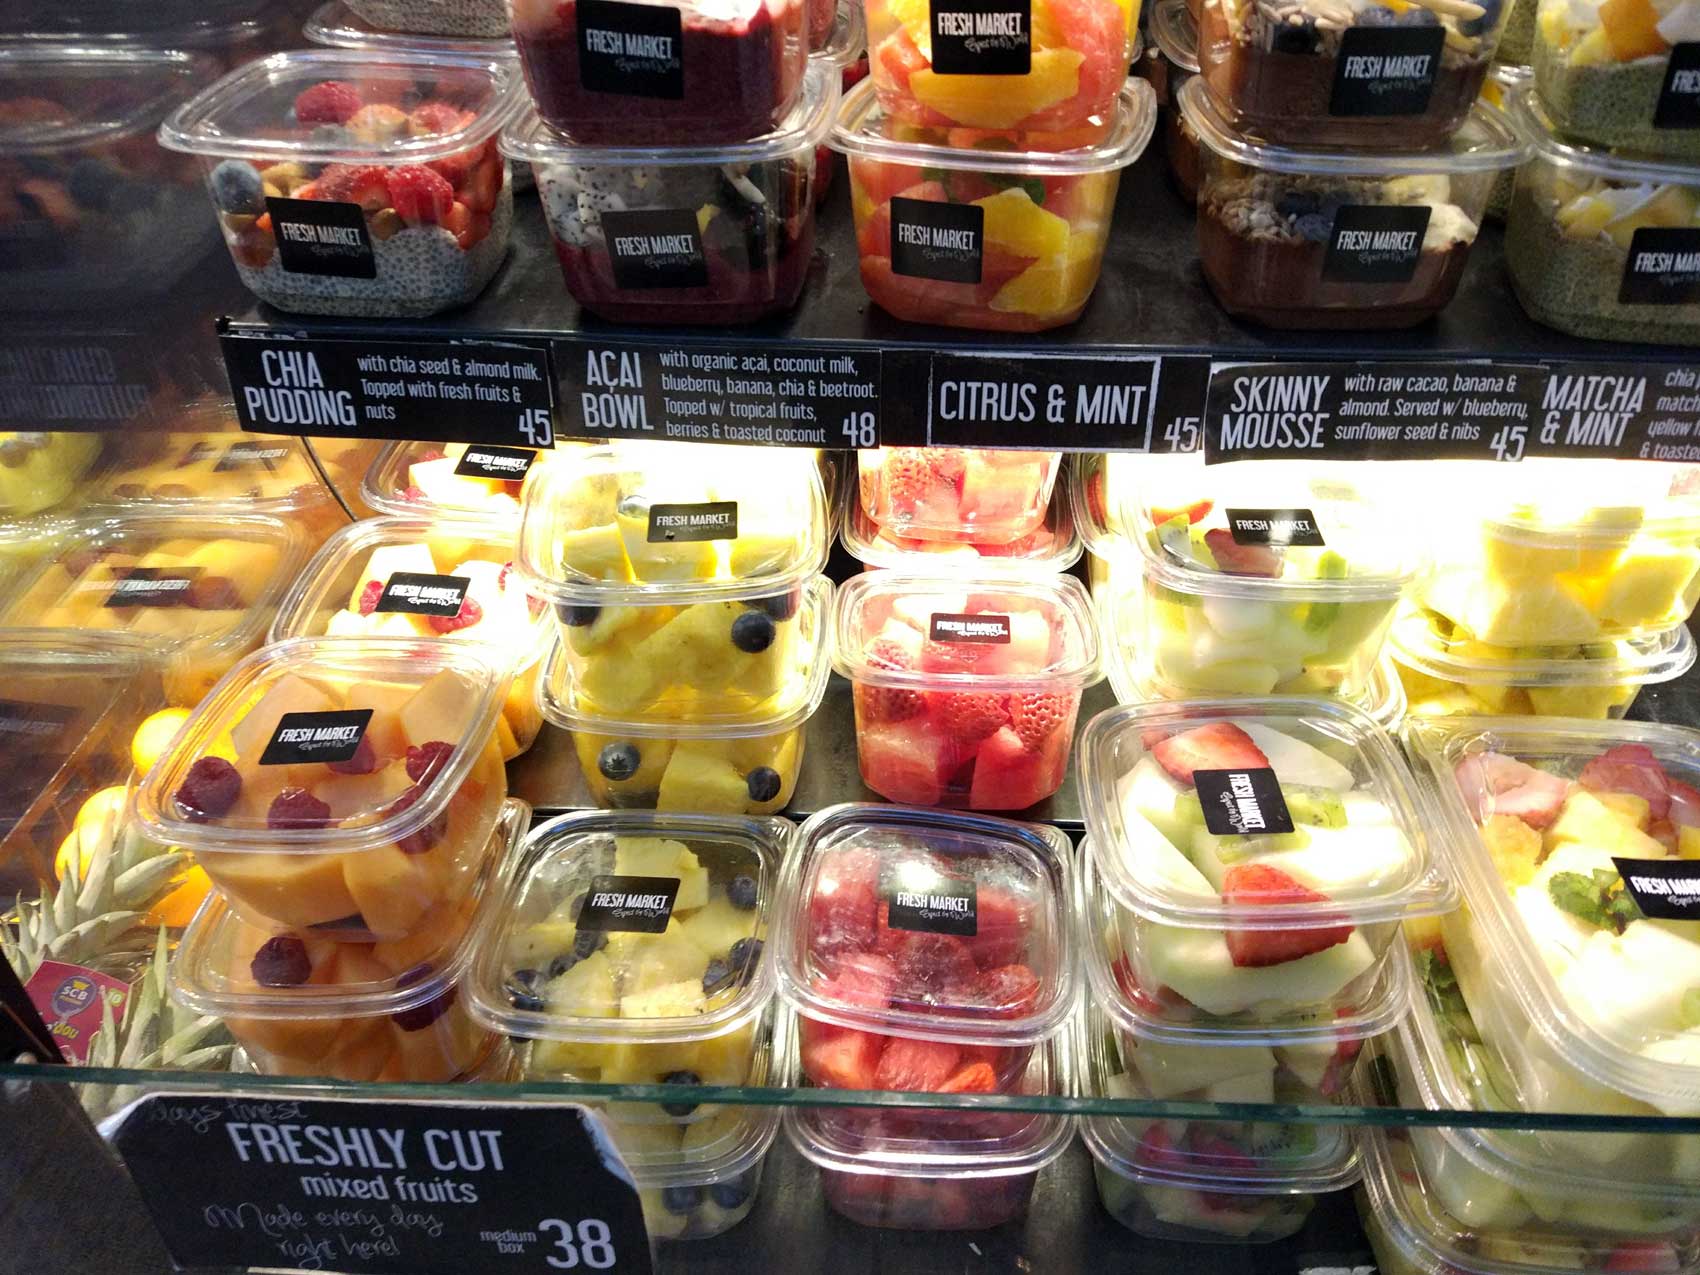 Fotografa 1. Frutas IV gama en el lineal de supermercado